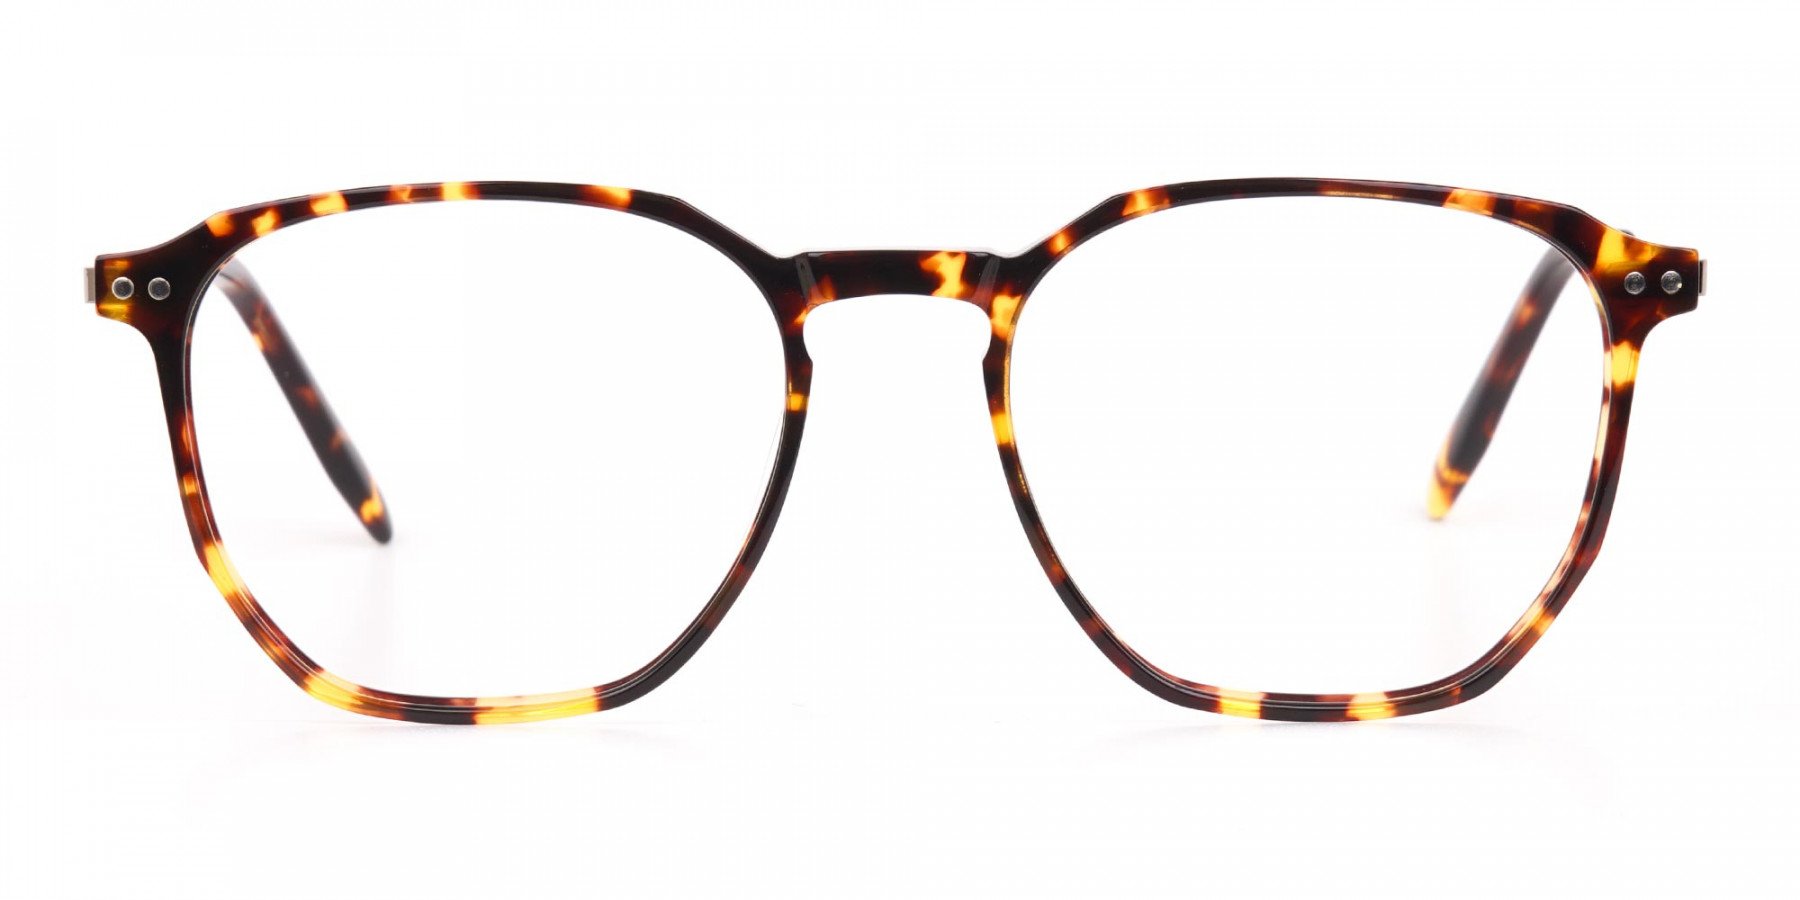 Tortoise Geometric Glasses Frame Unisex-1